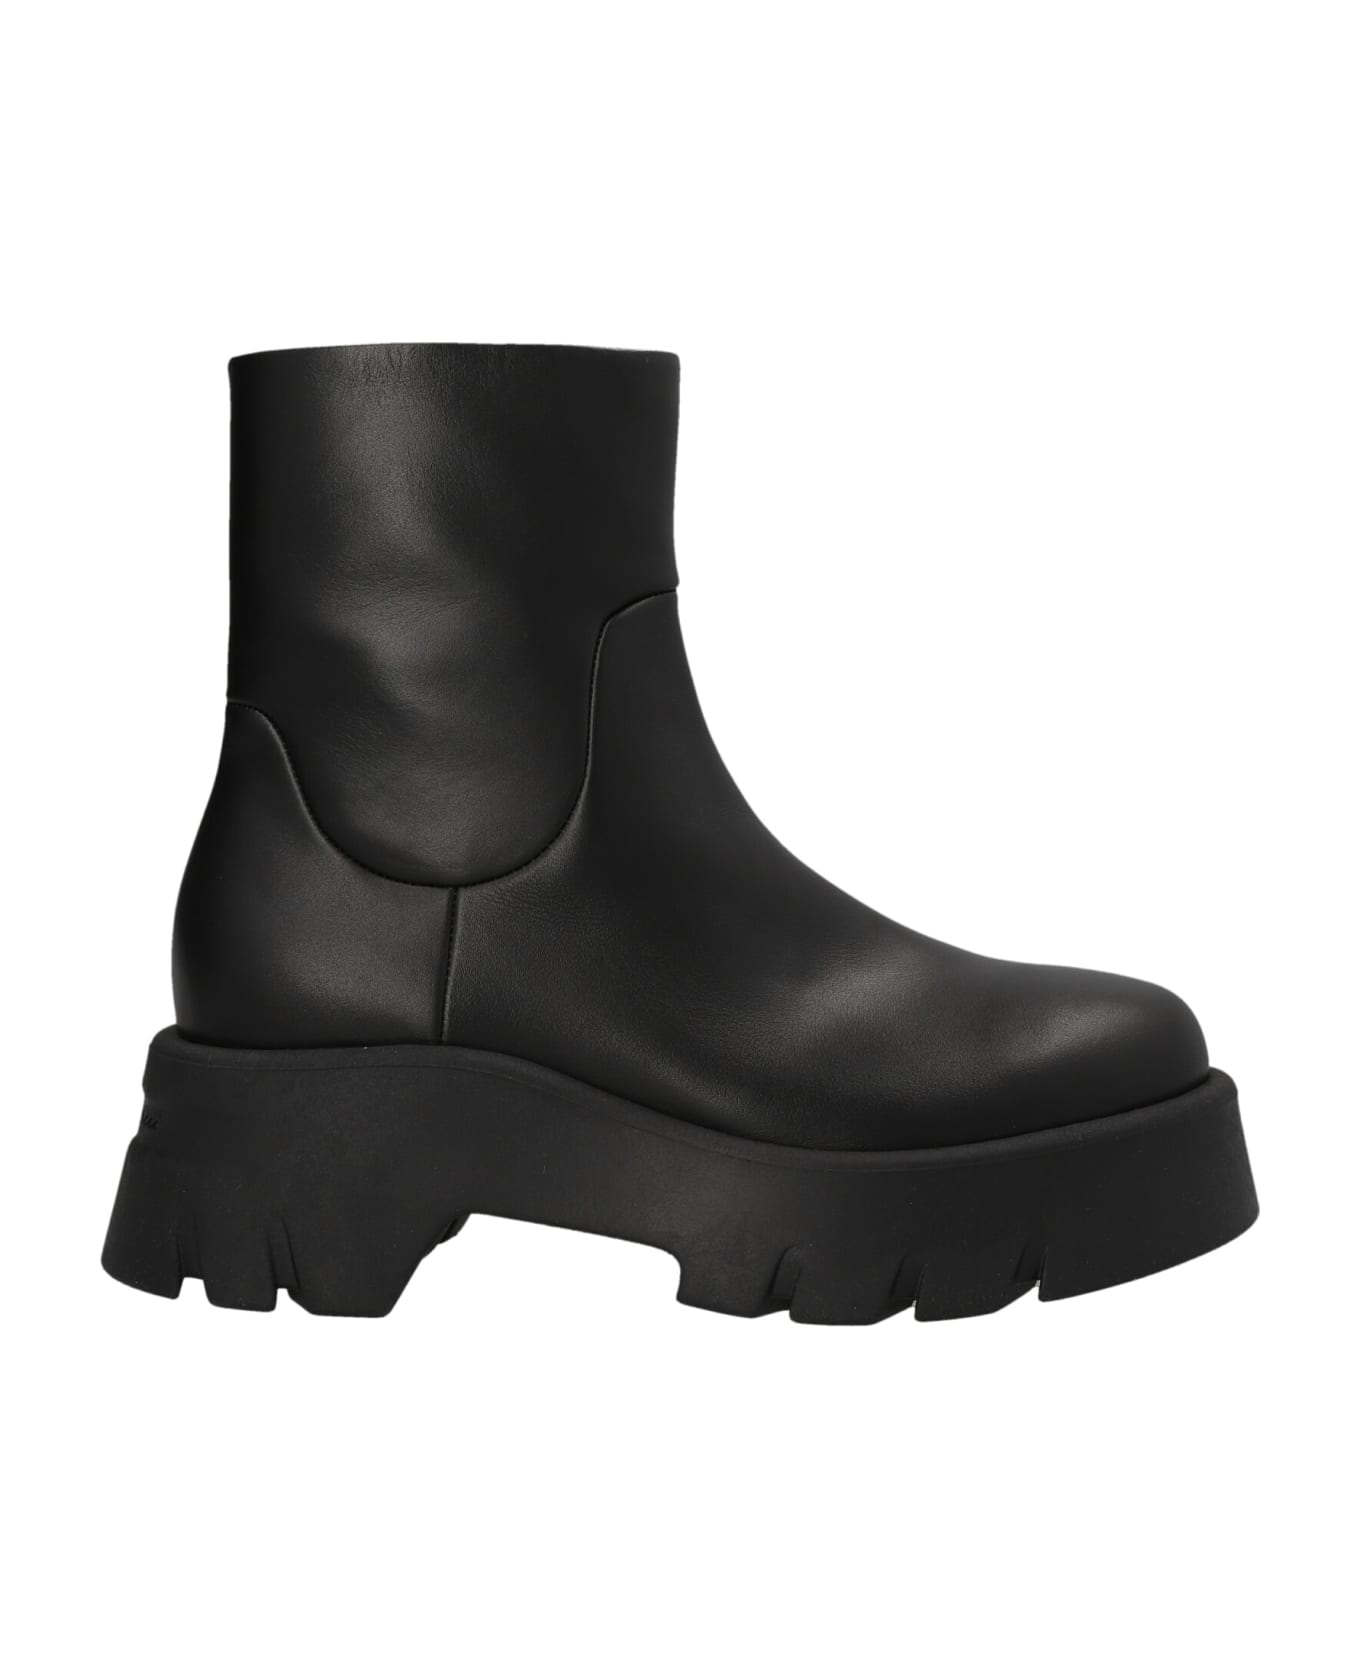 Gianvito Rossi Lug Sole Ankle Boots - Vitello Glove Black